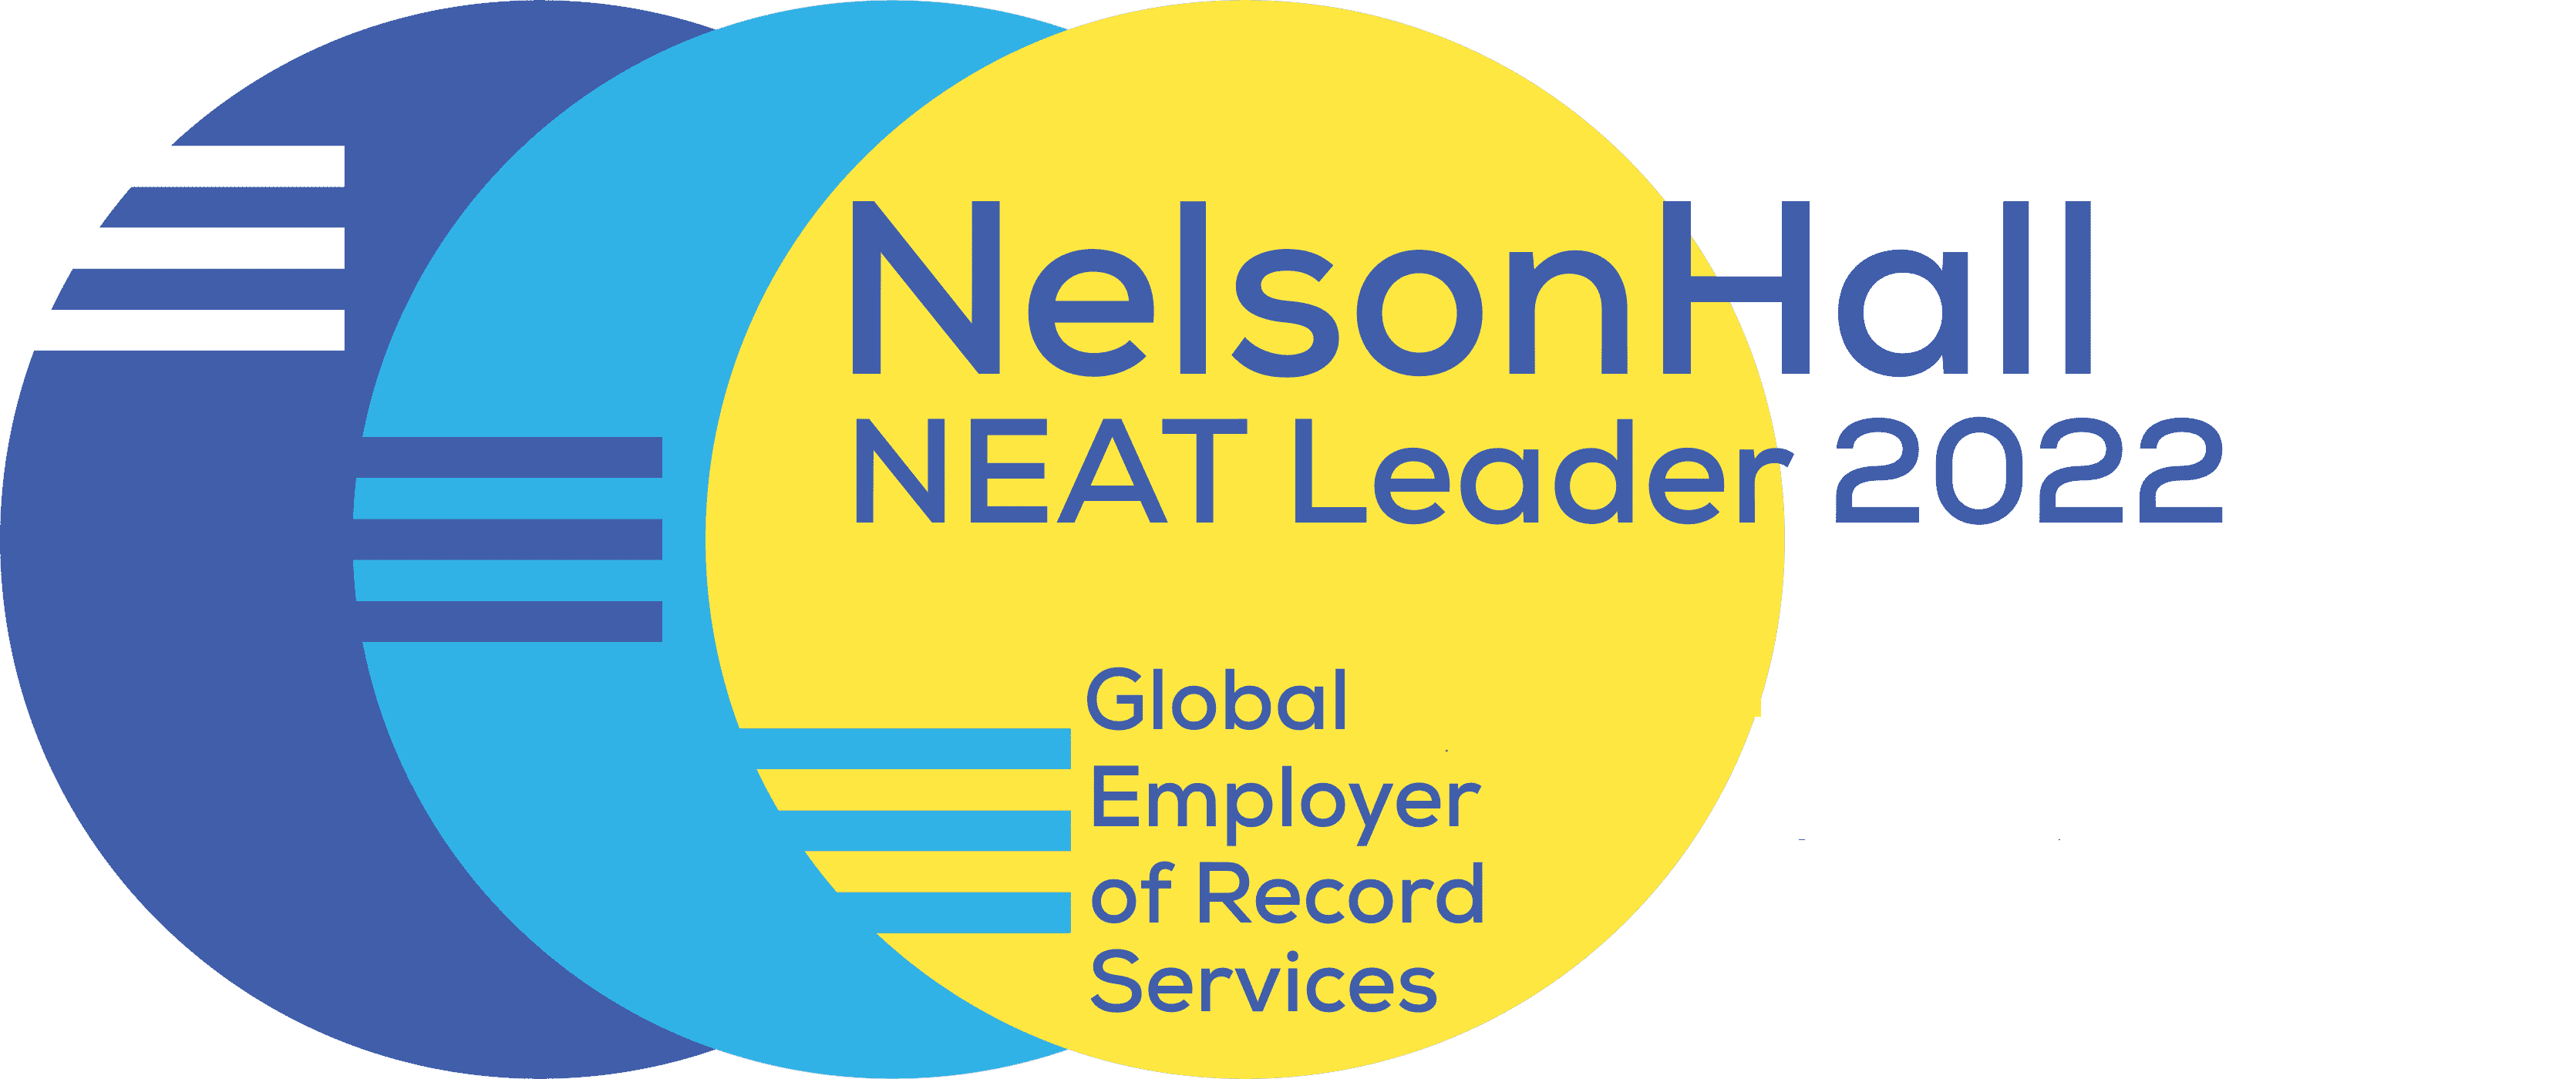 NelsonHall - Transformieren durch Einblicke